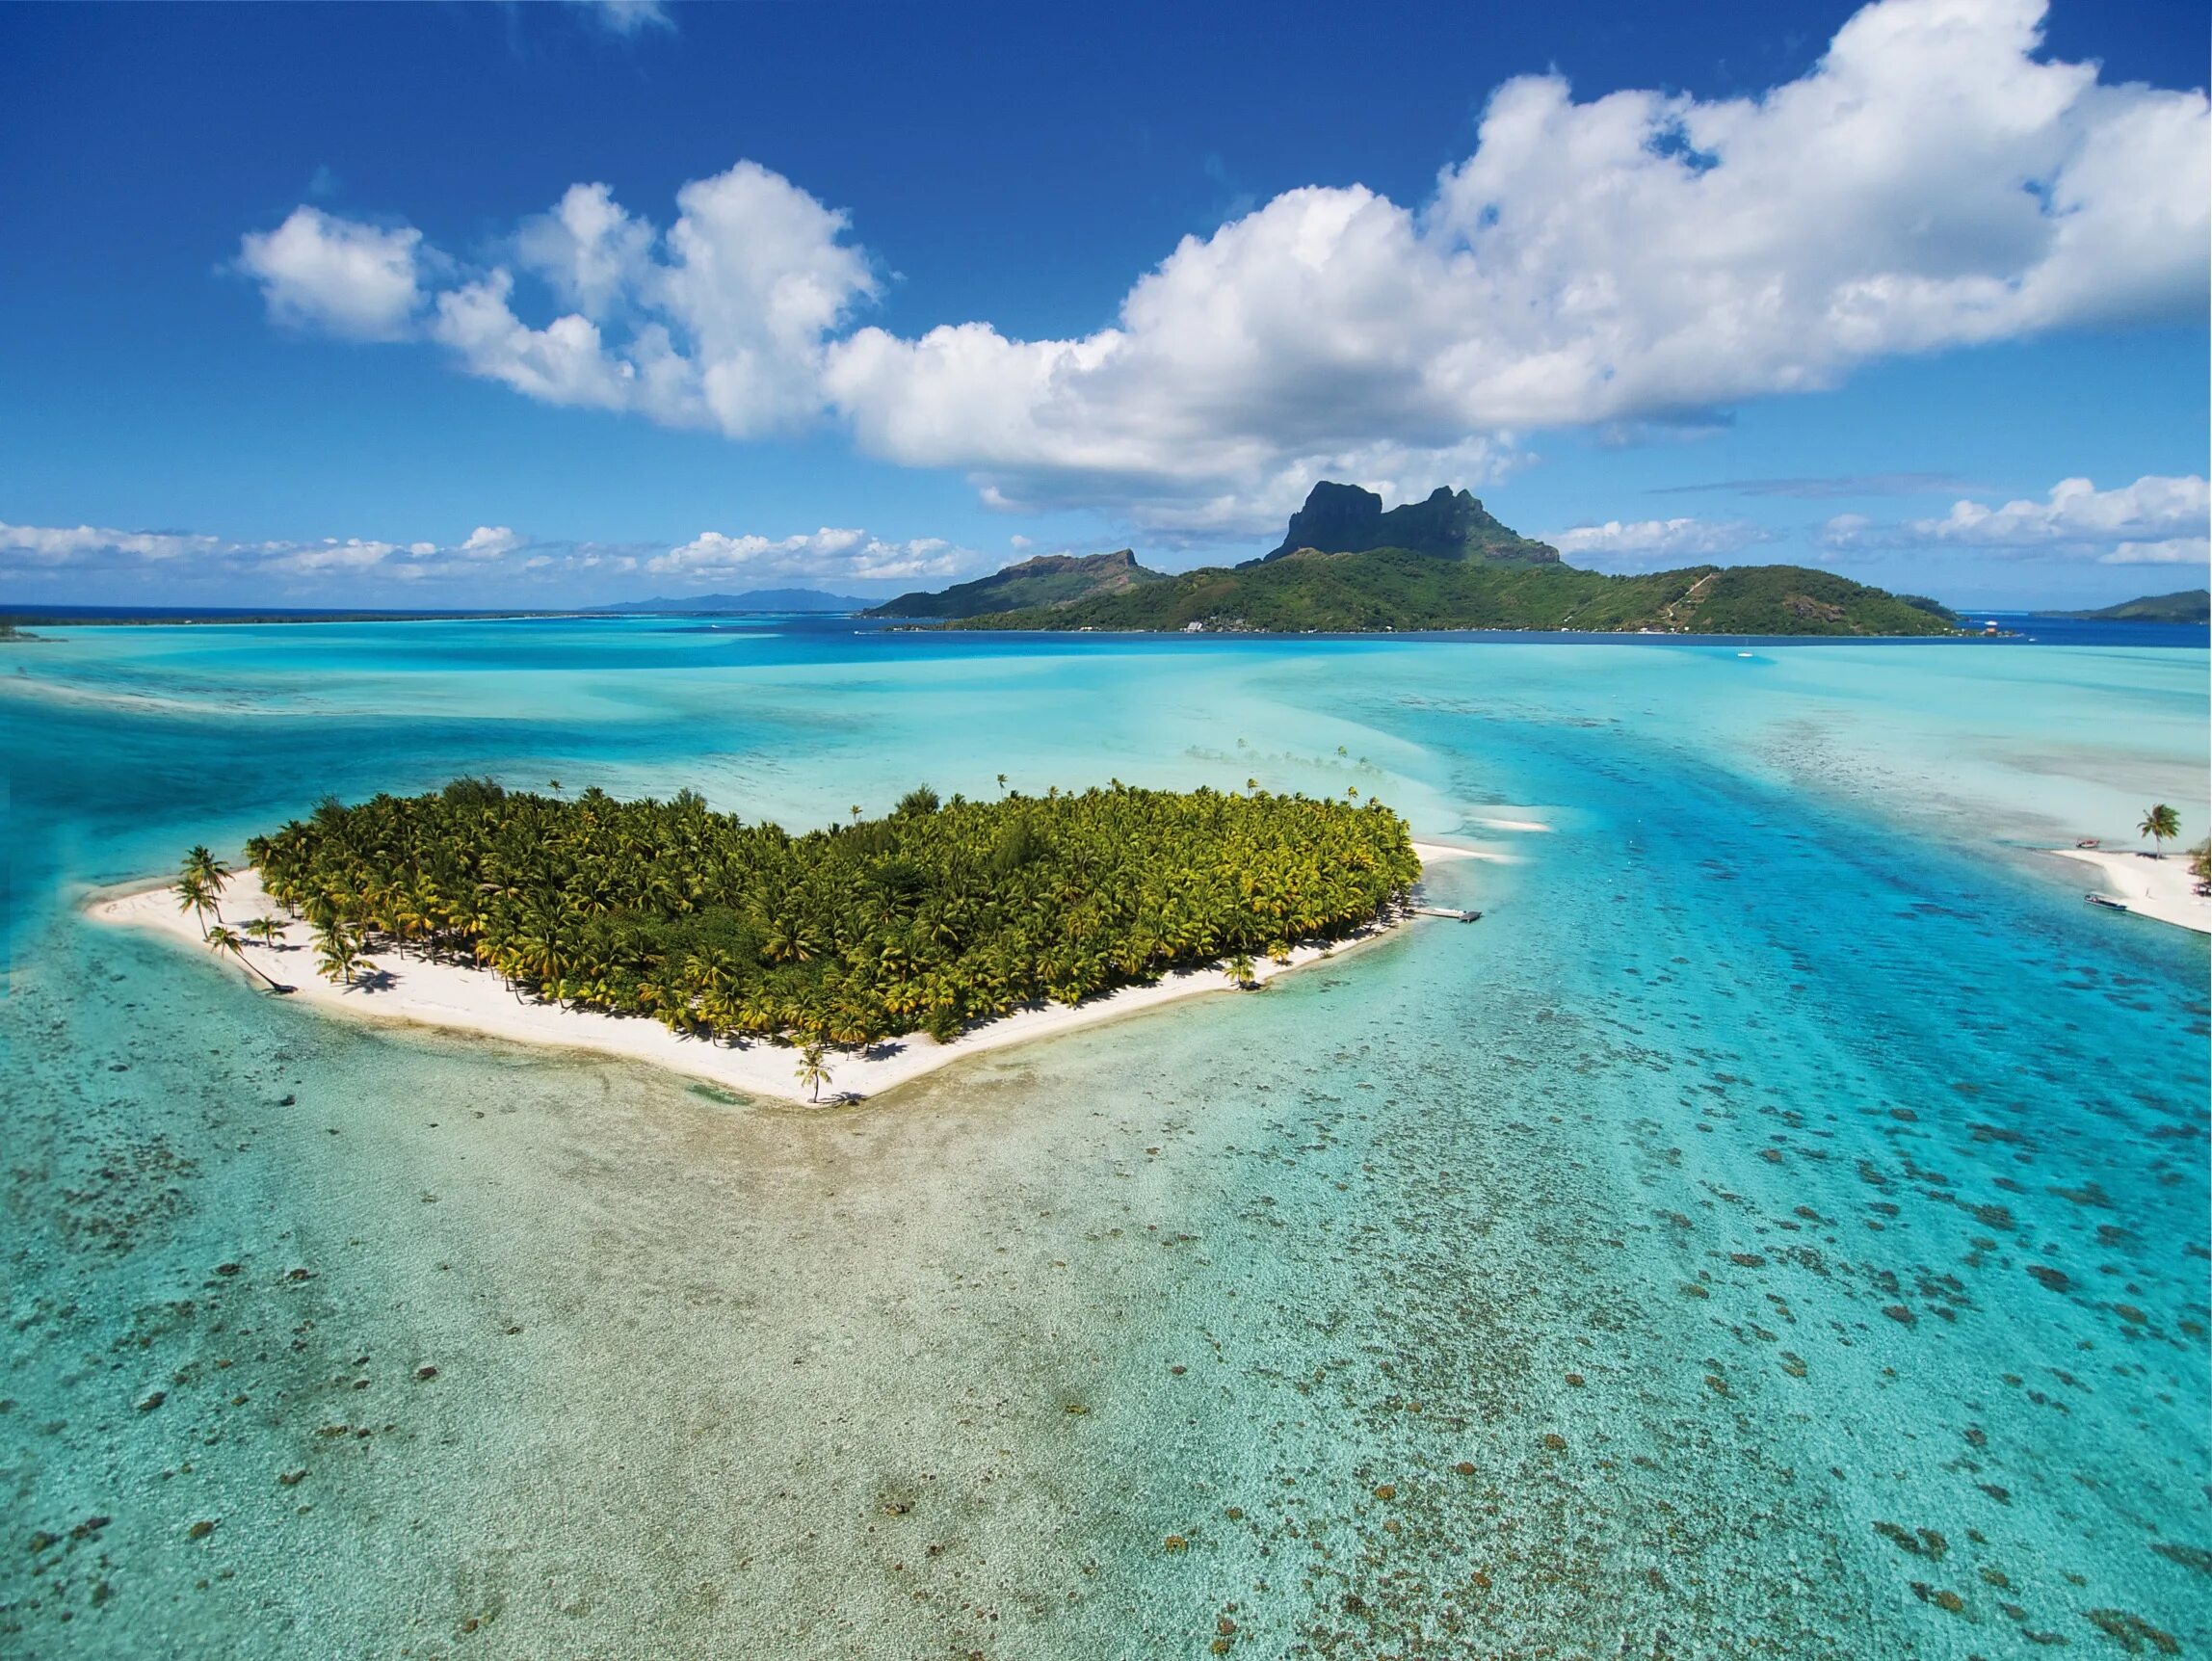 Остров омываемый двумя океанами. Боро Боро. Таити французская Полинезия. Остров Бора-Бора, французская Полинезия. Бора Бора на Таити.